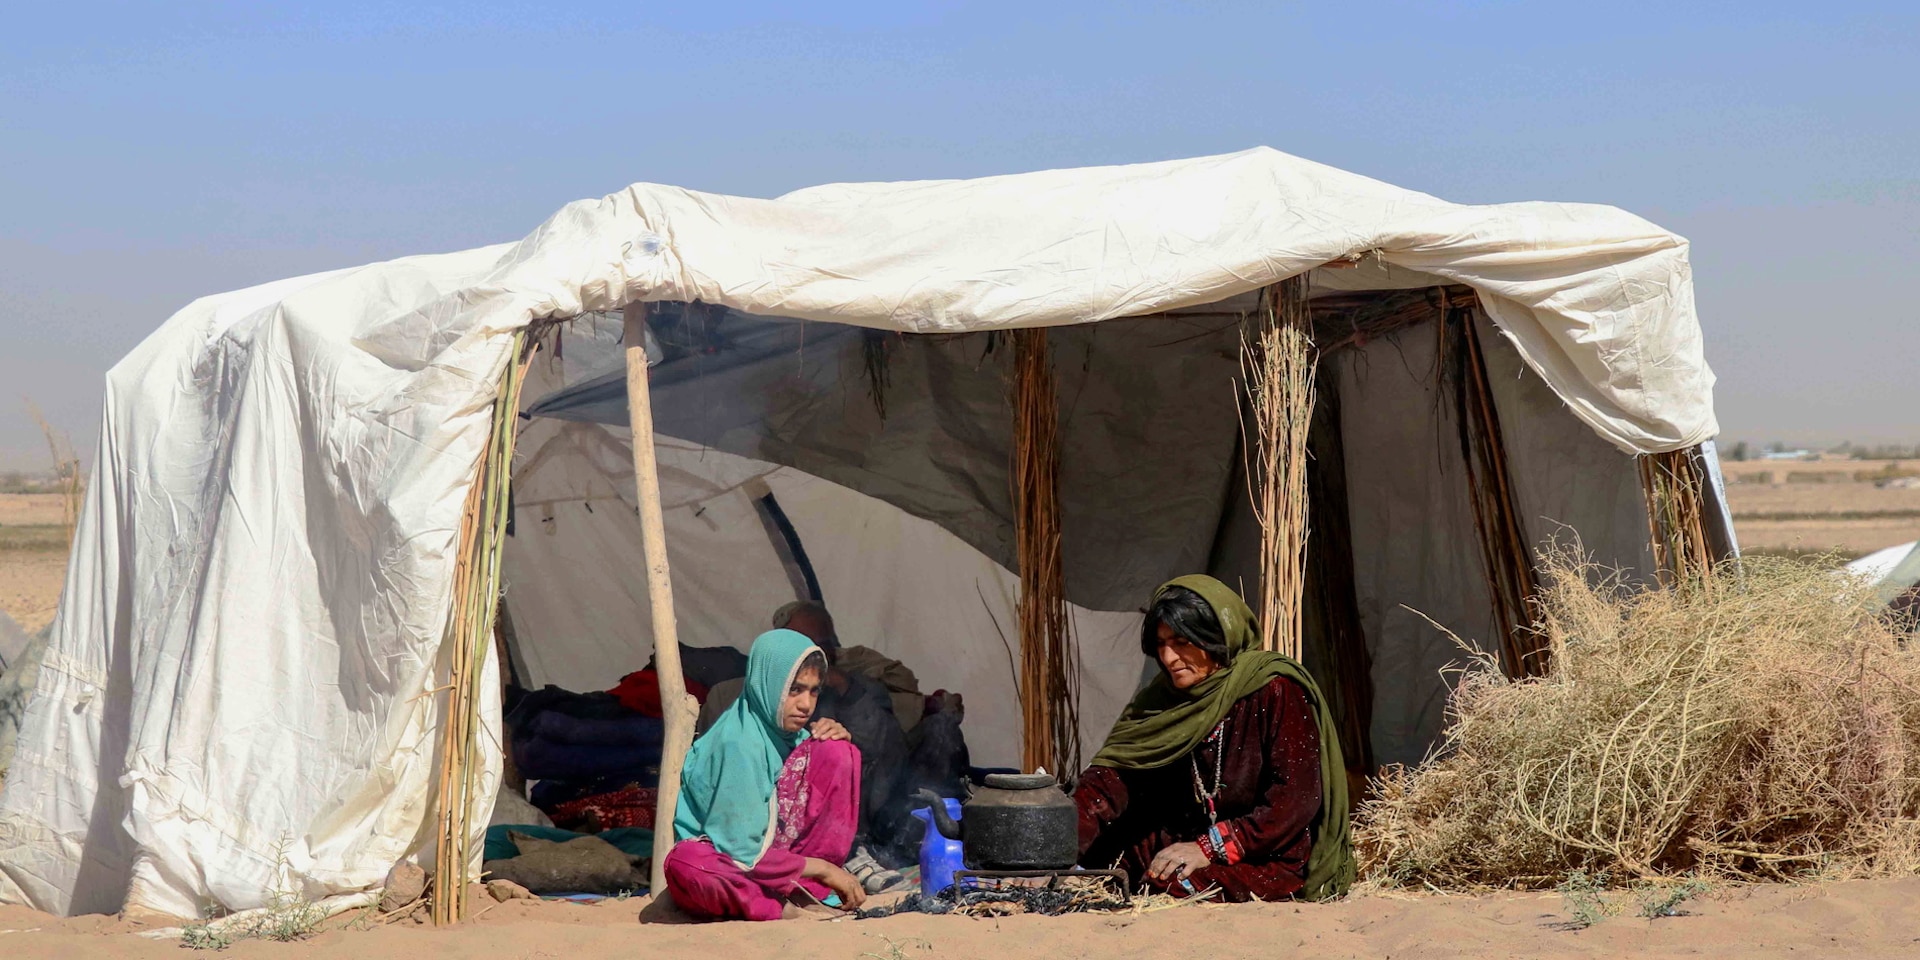 Una donna e una ragazza sedute in una tenda bianca improvvisata nel deserto.